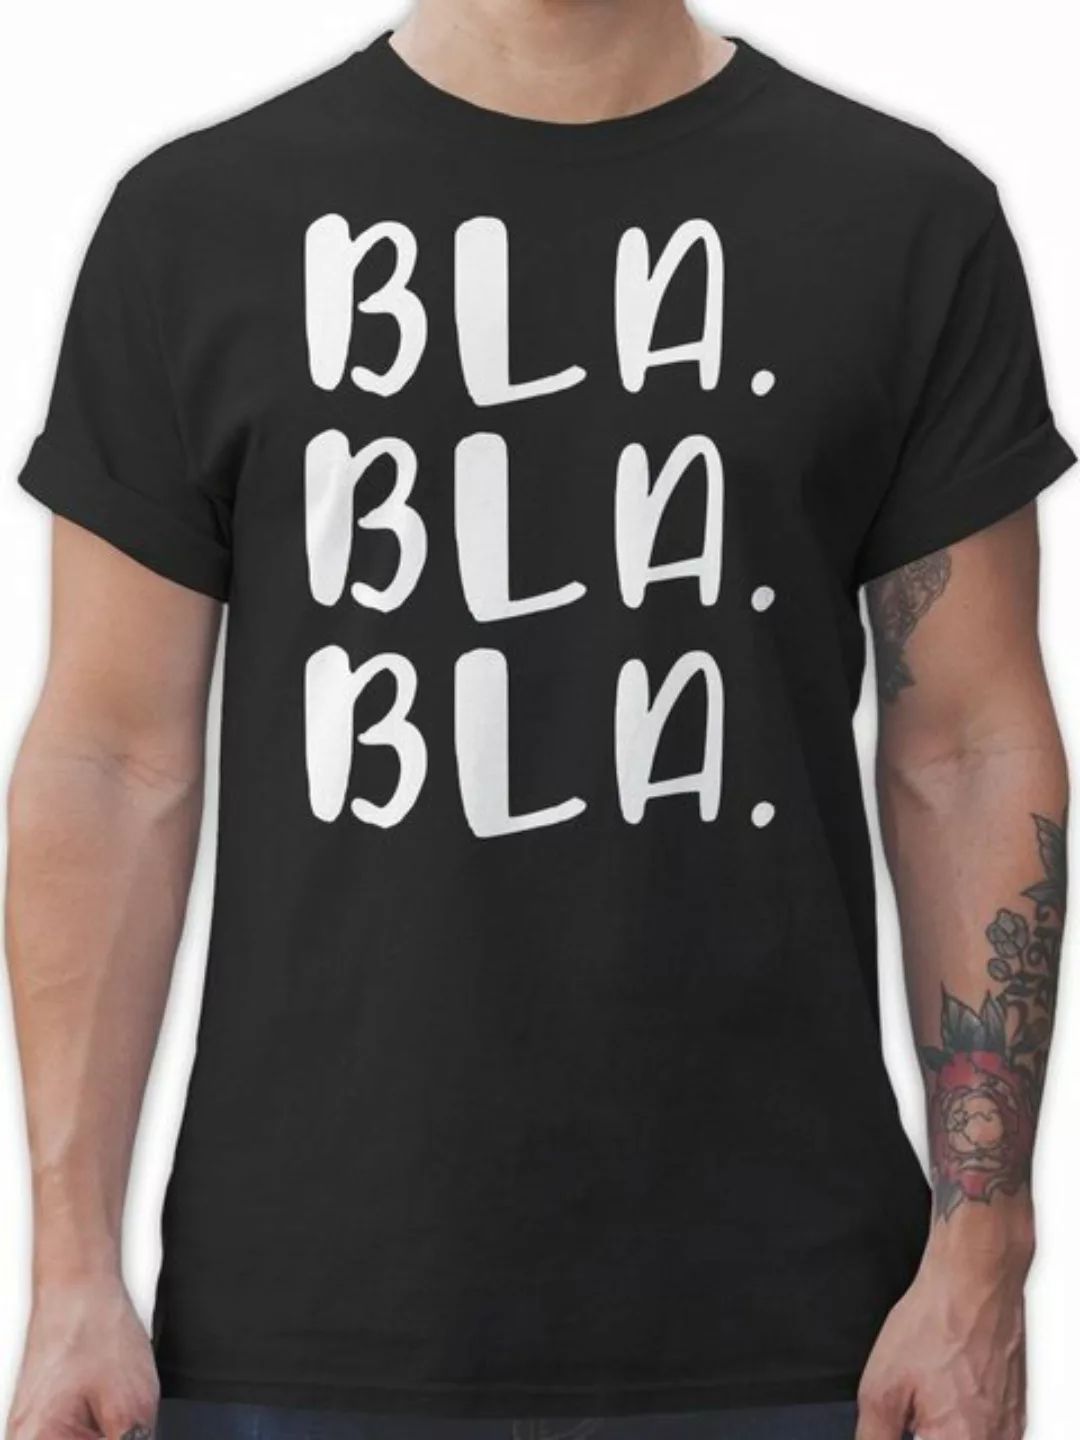 Shirtracer T-Shirt Bla Bla Bla - weiß Sprüche Statement mit Spruch günstig online kaufen